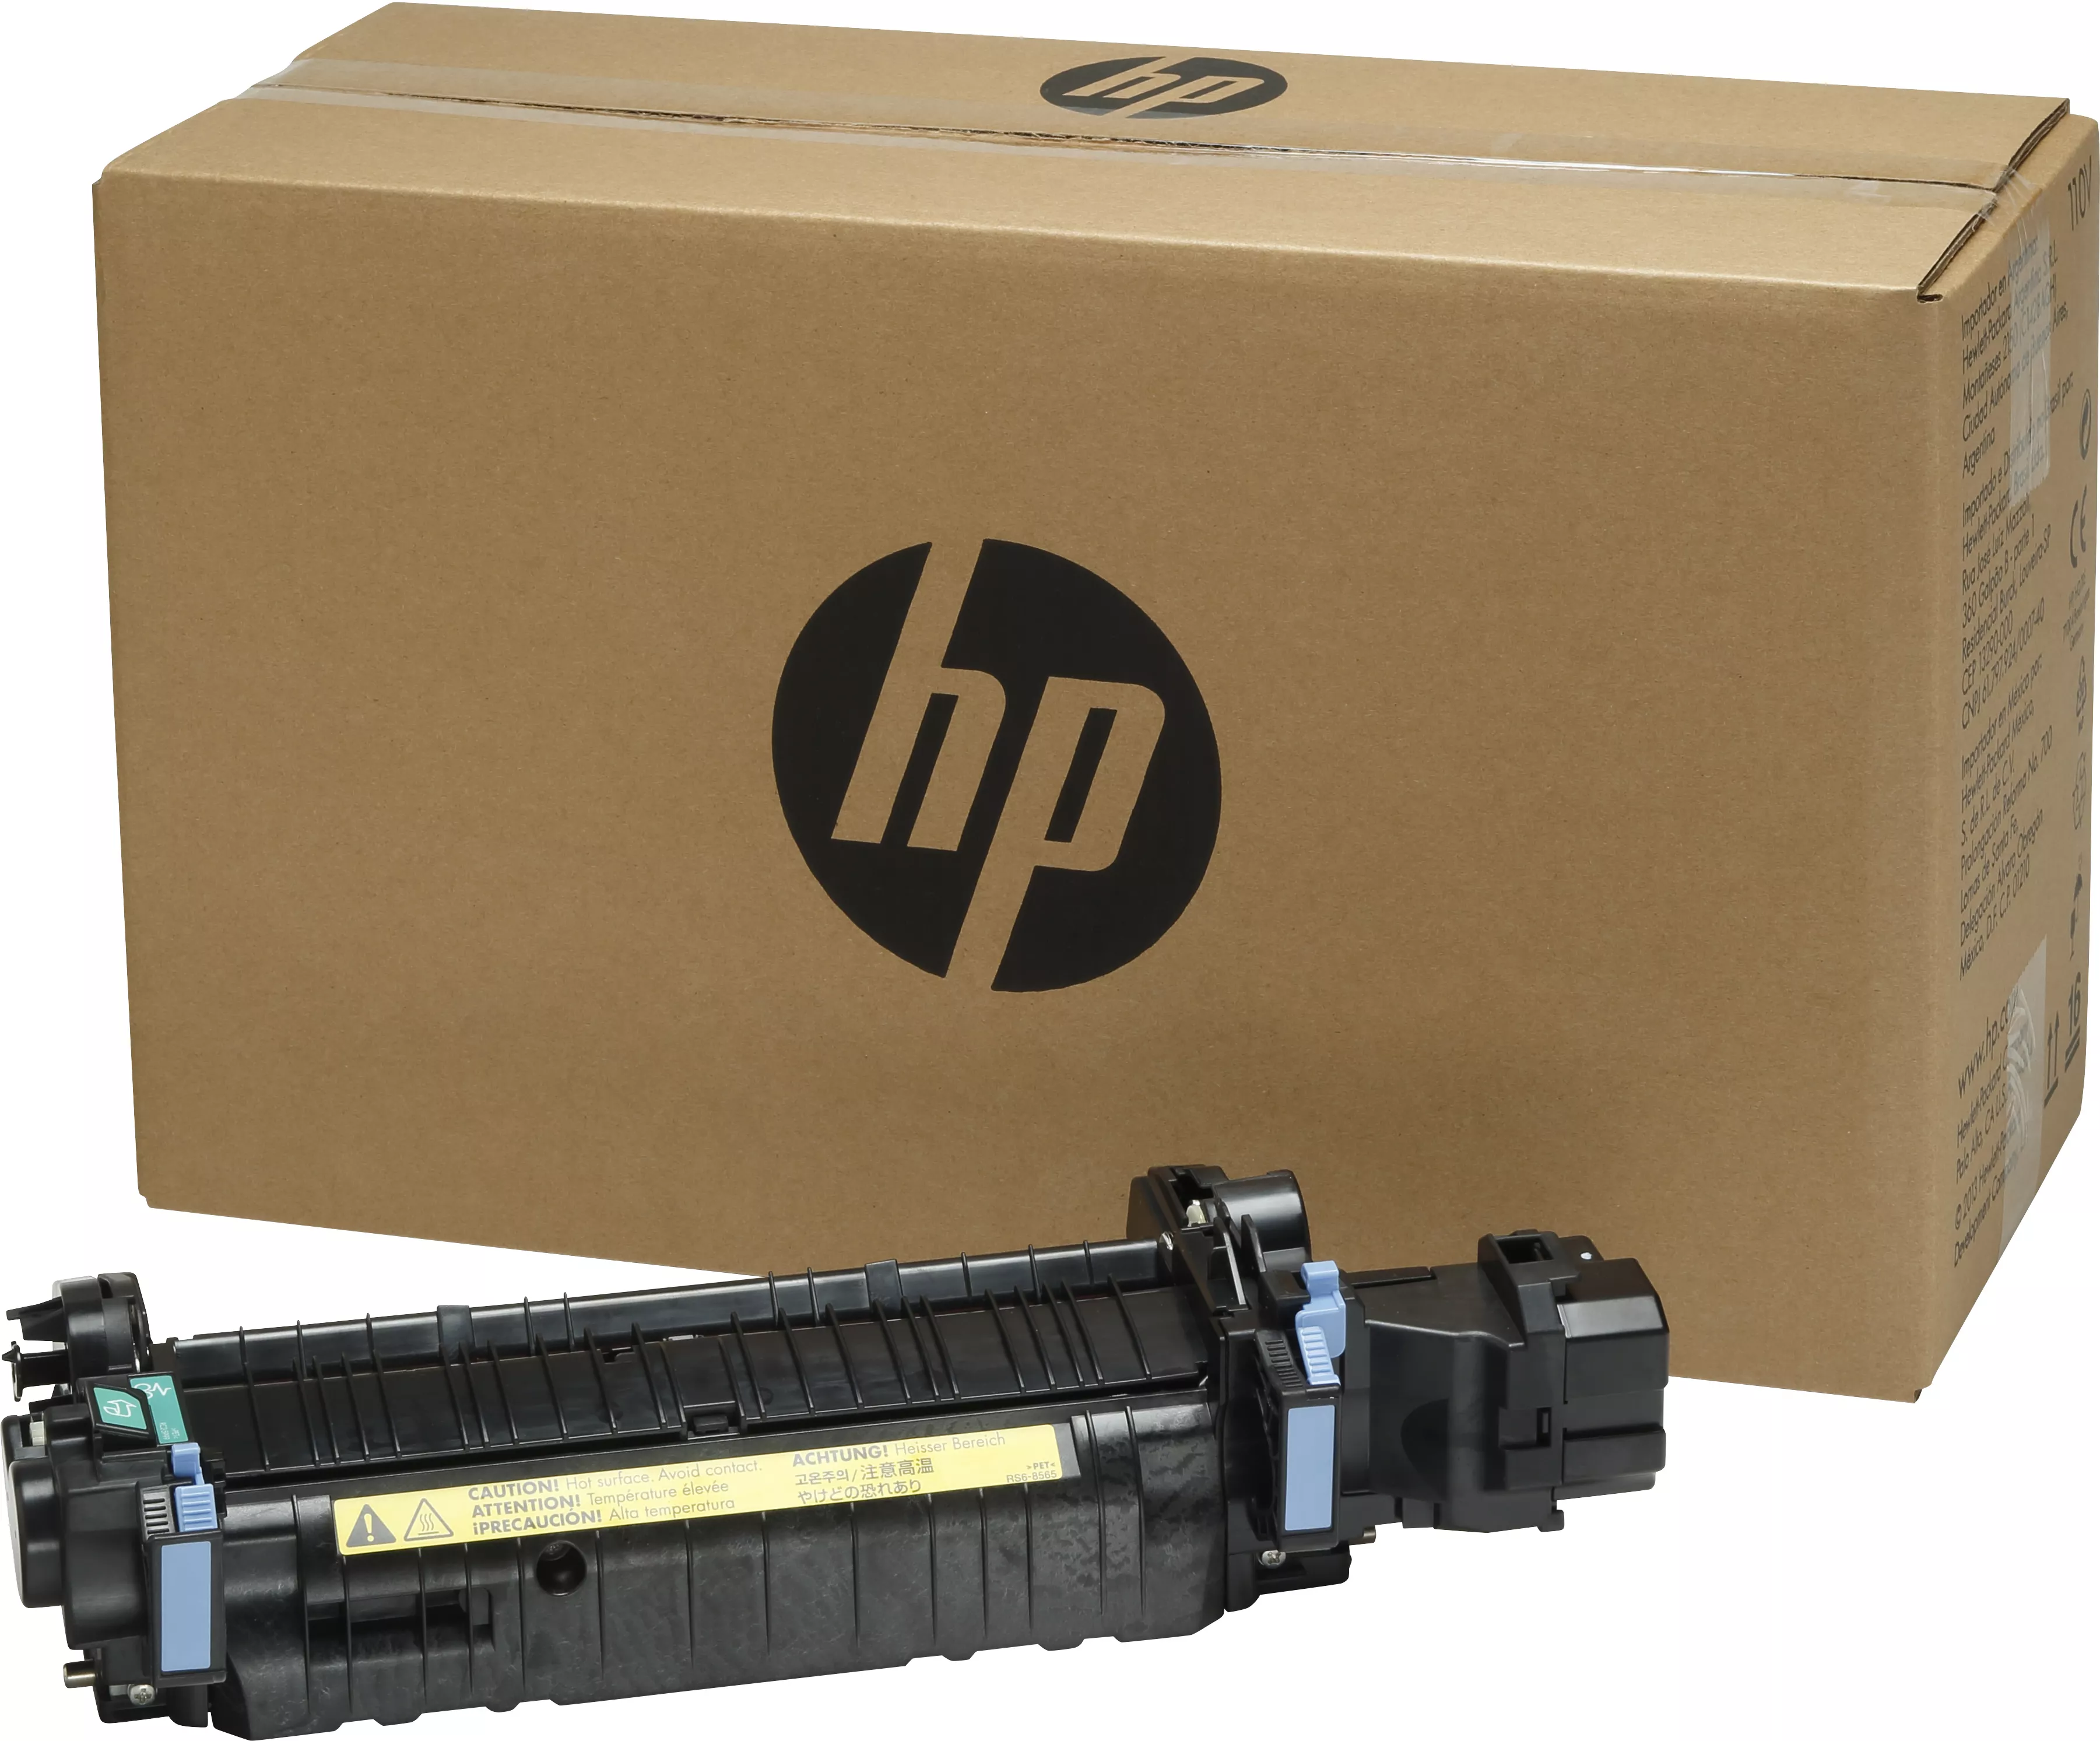 Revendeur officiel Autres consommables HP original fuser Kit CE274A standard capacity 150.000 pages